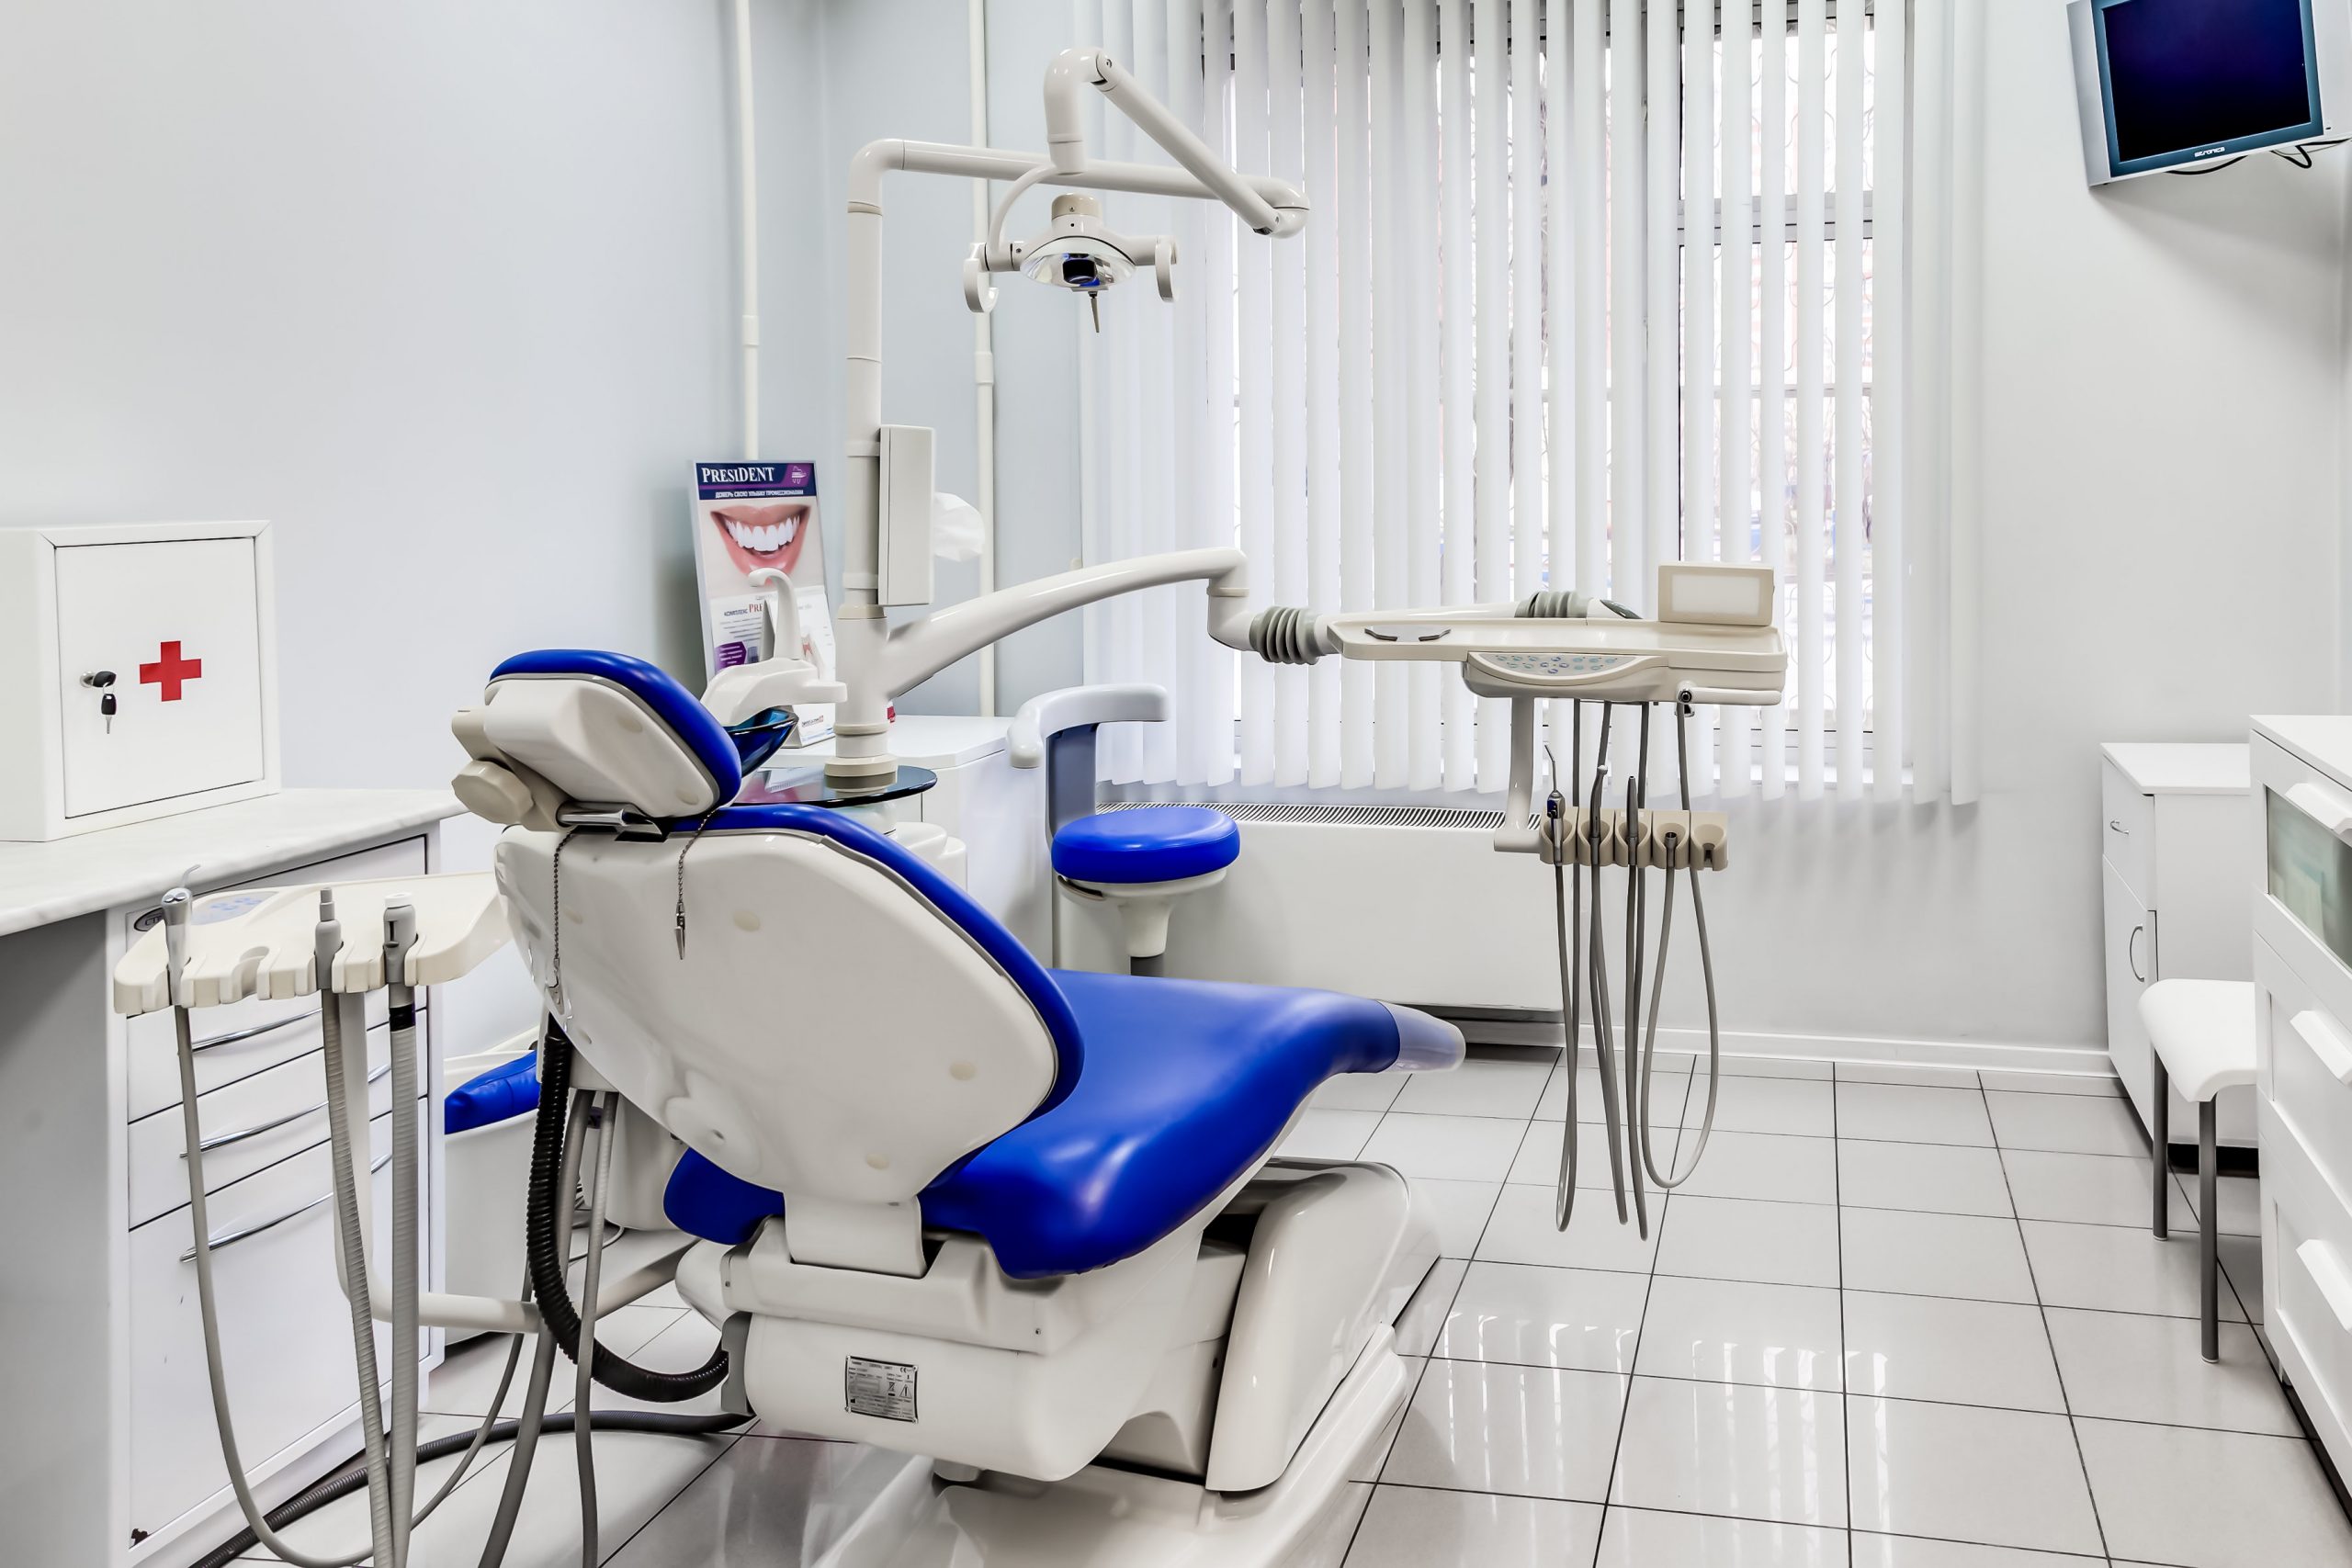 Стоматологическая мебель: требования к изделиям